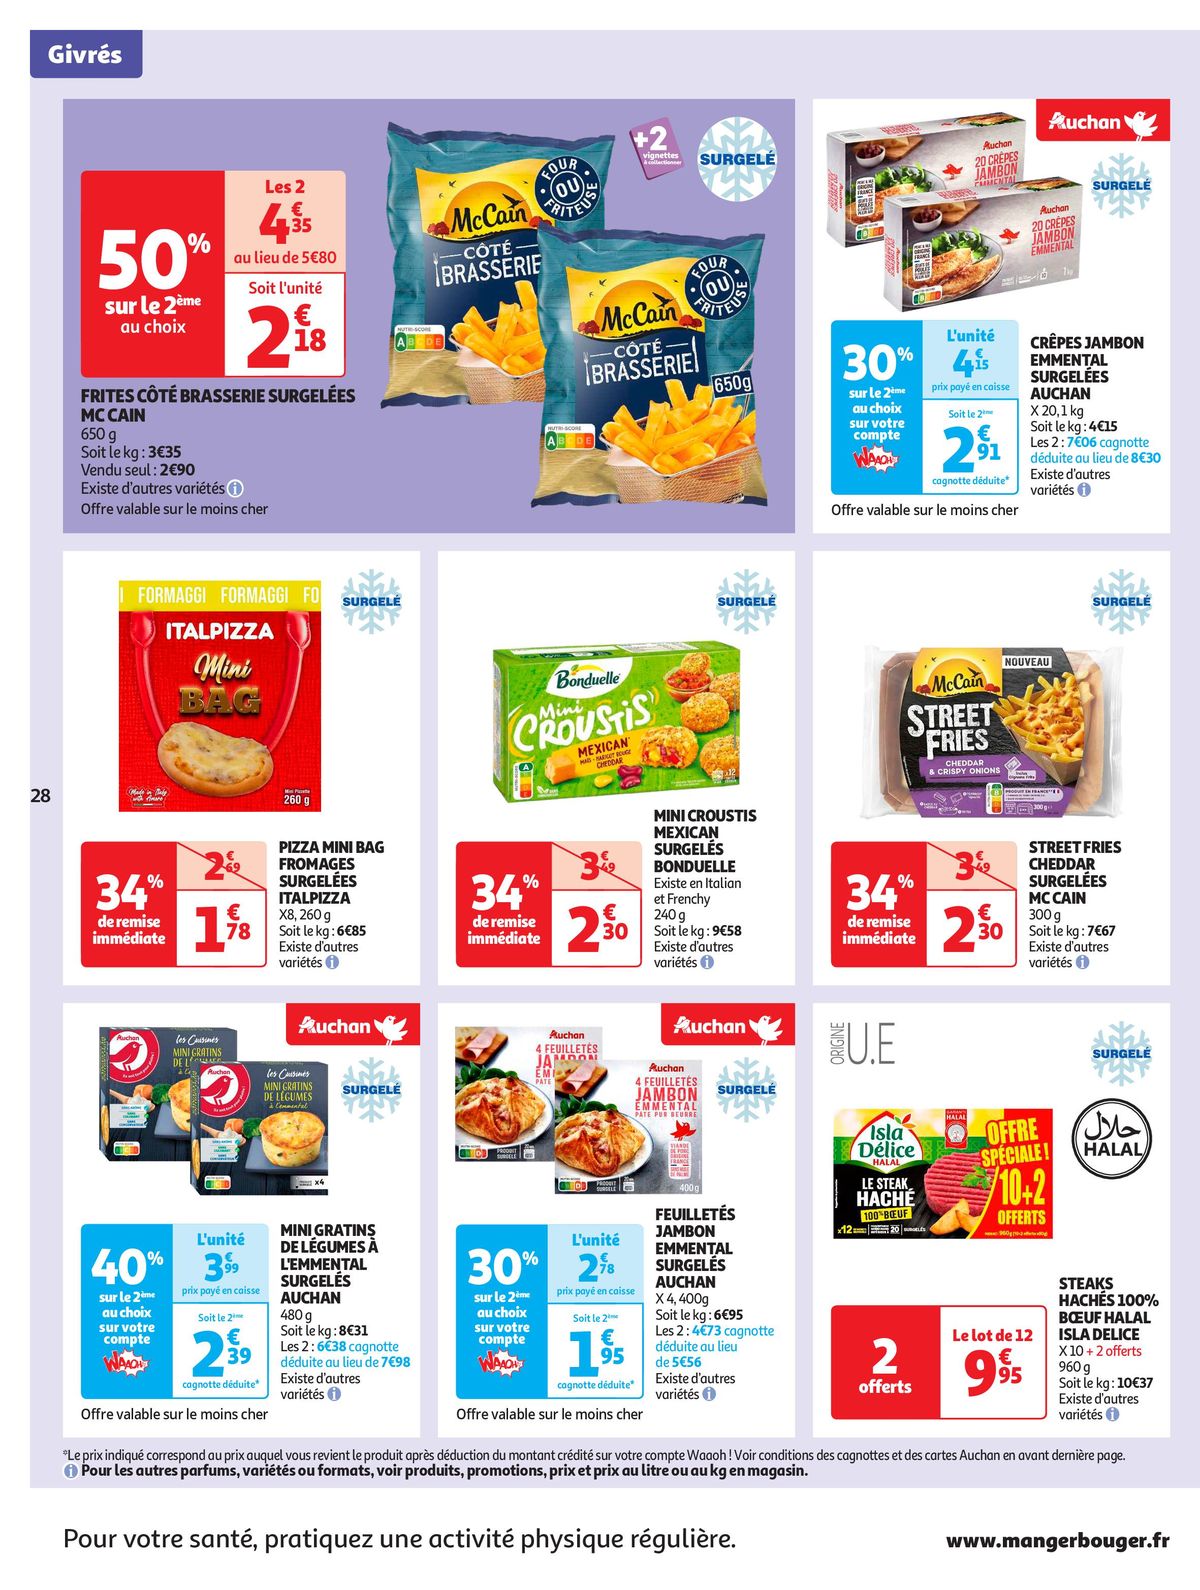 Catalogue Format XXL à prix XXS dans votre supermarché, page 00028